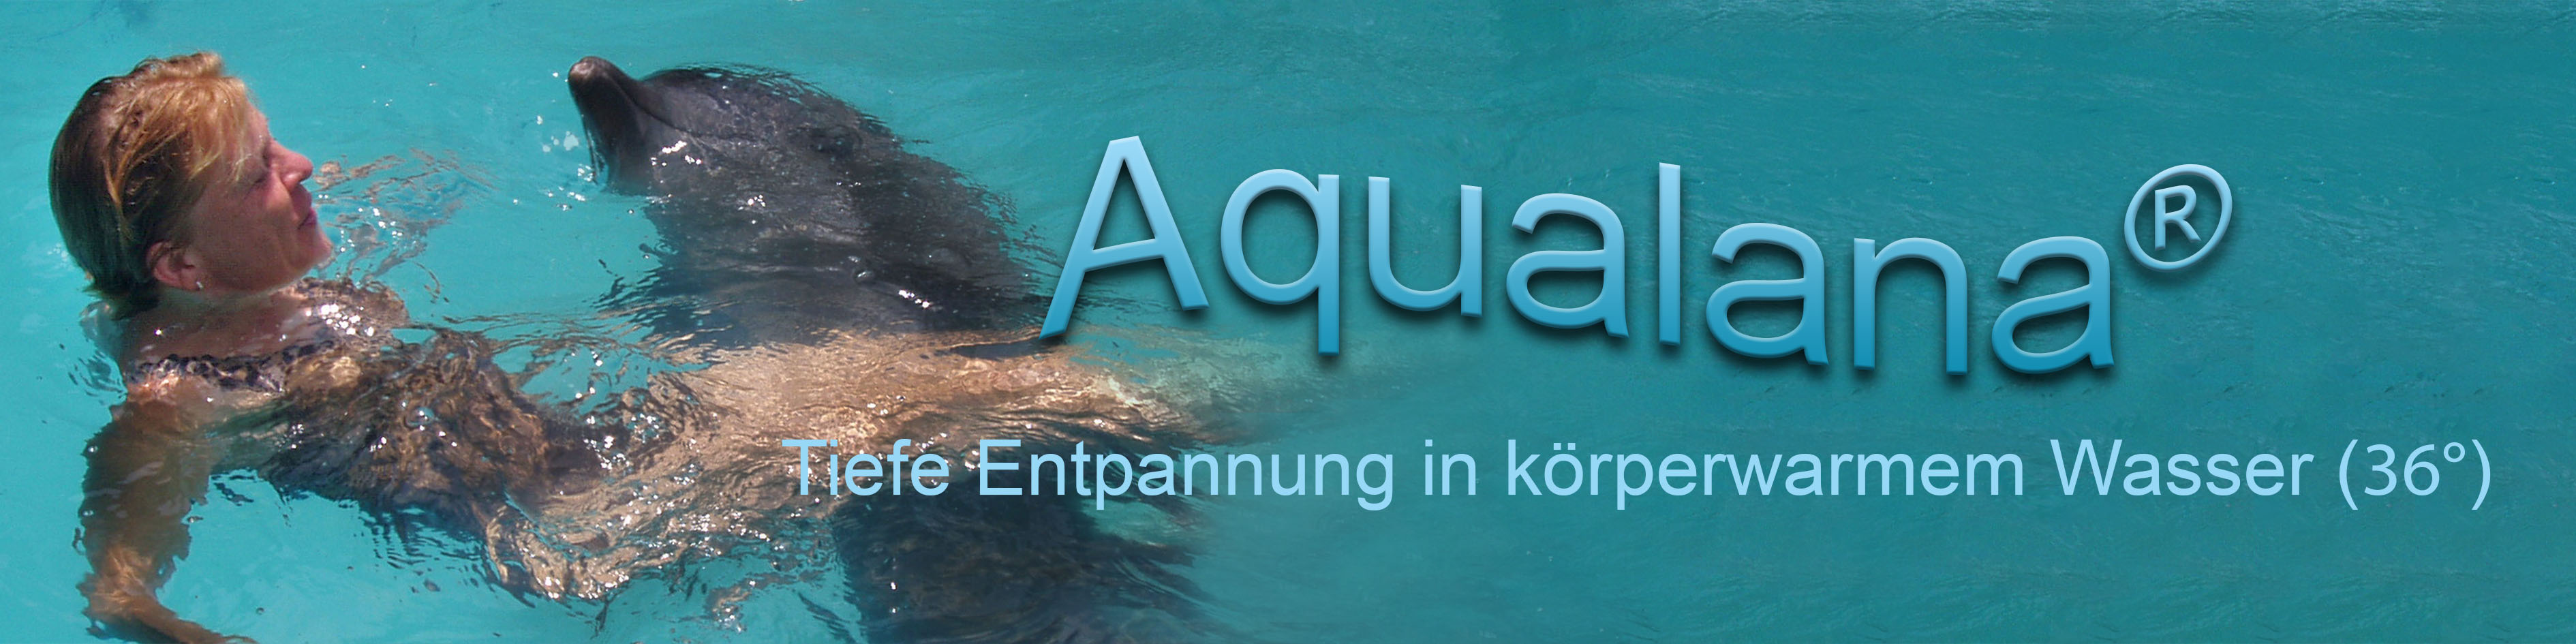 Aqualana